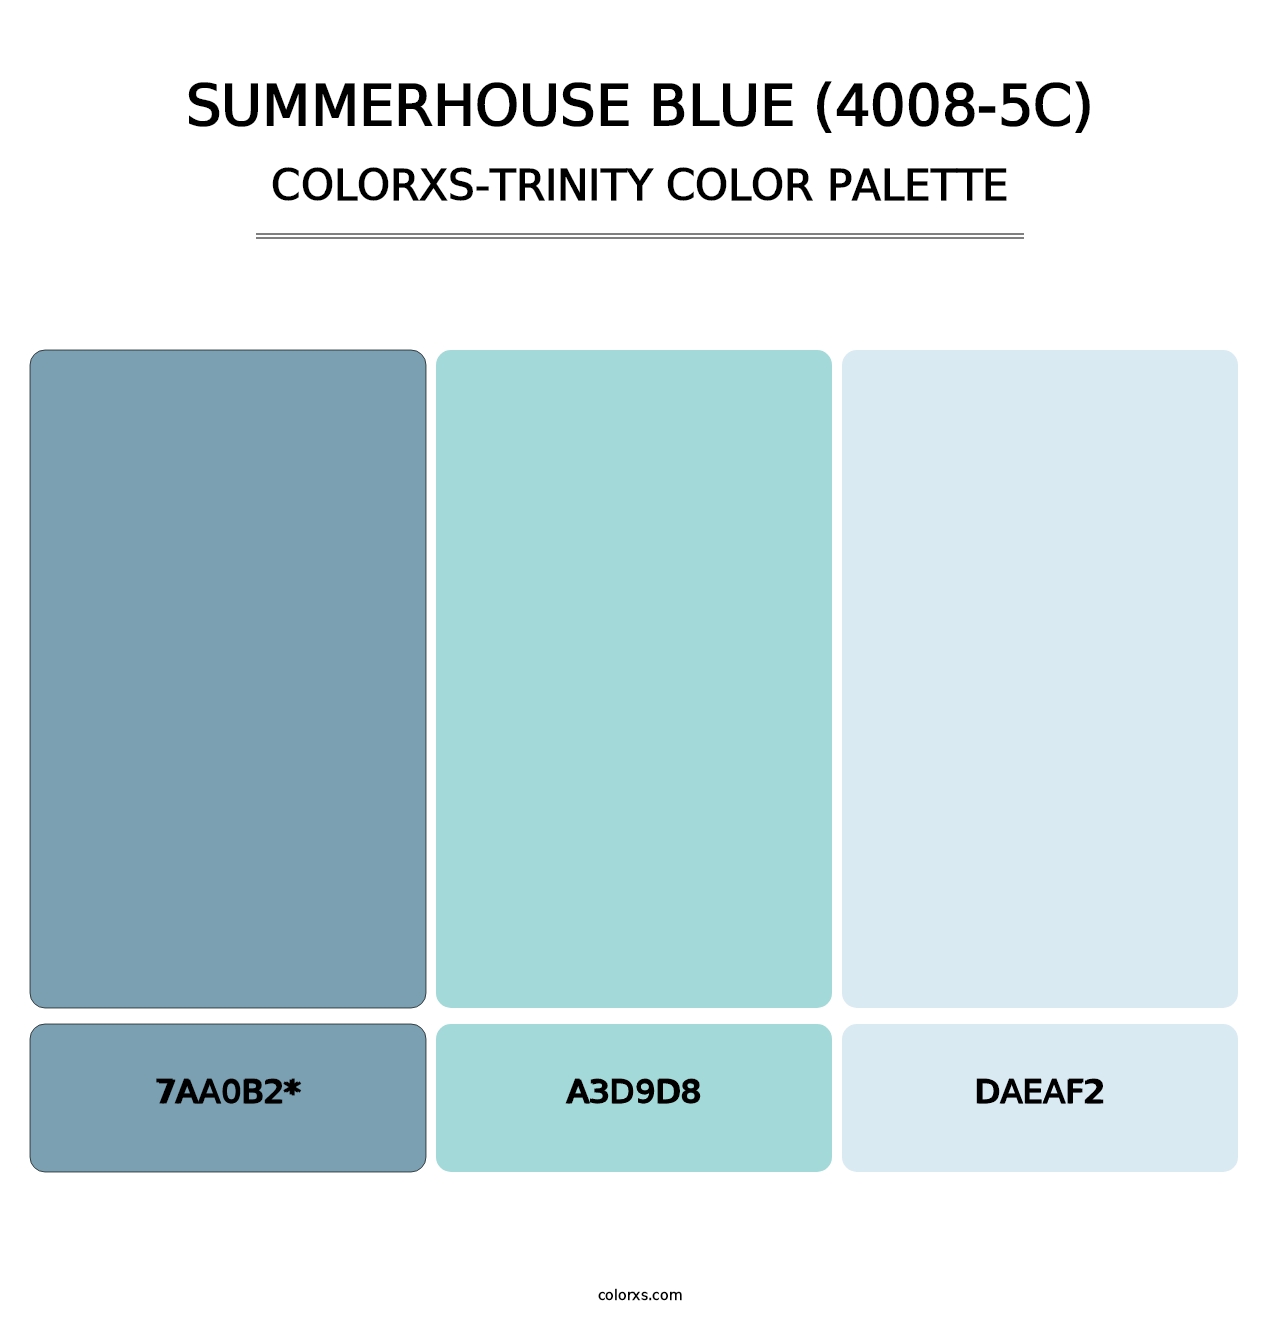 Summerhouse Blue (4008-5C) - Colorxs Trinity Palette